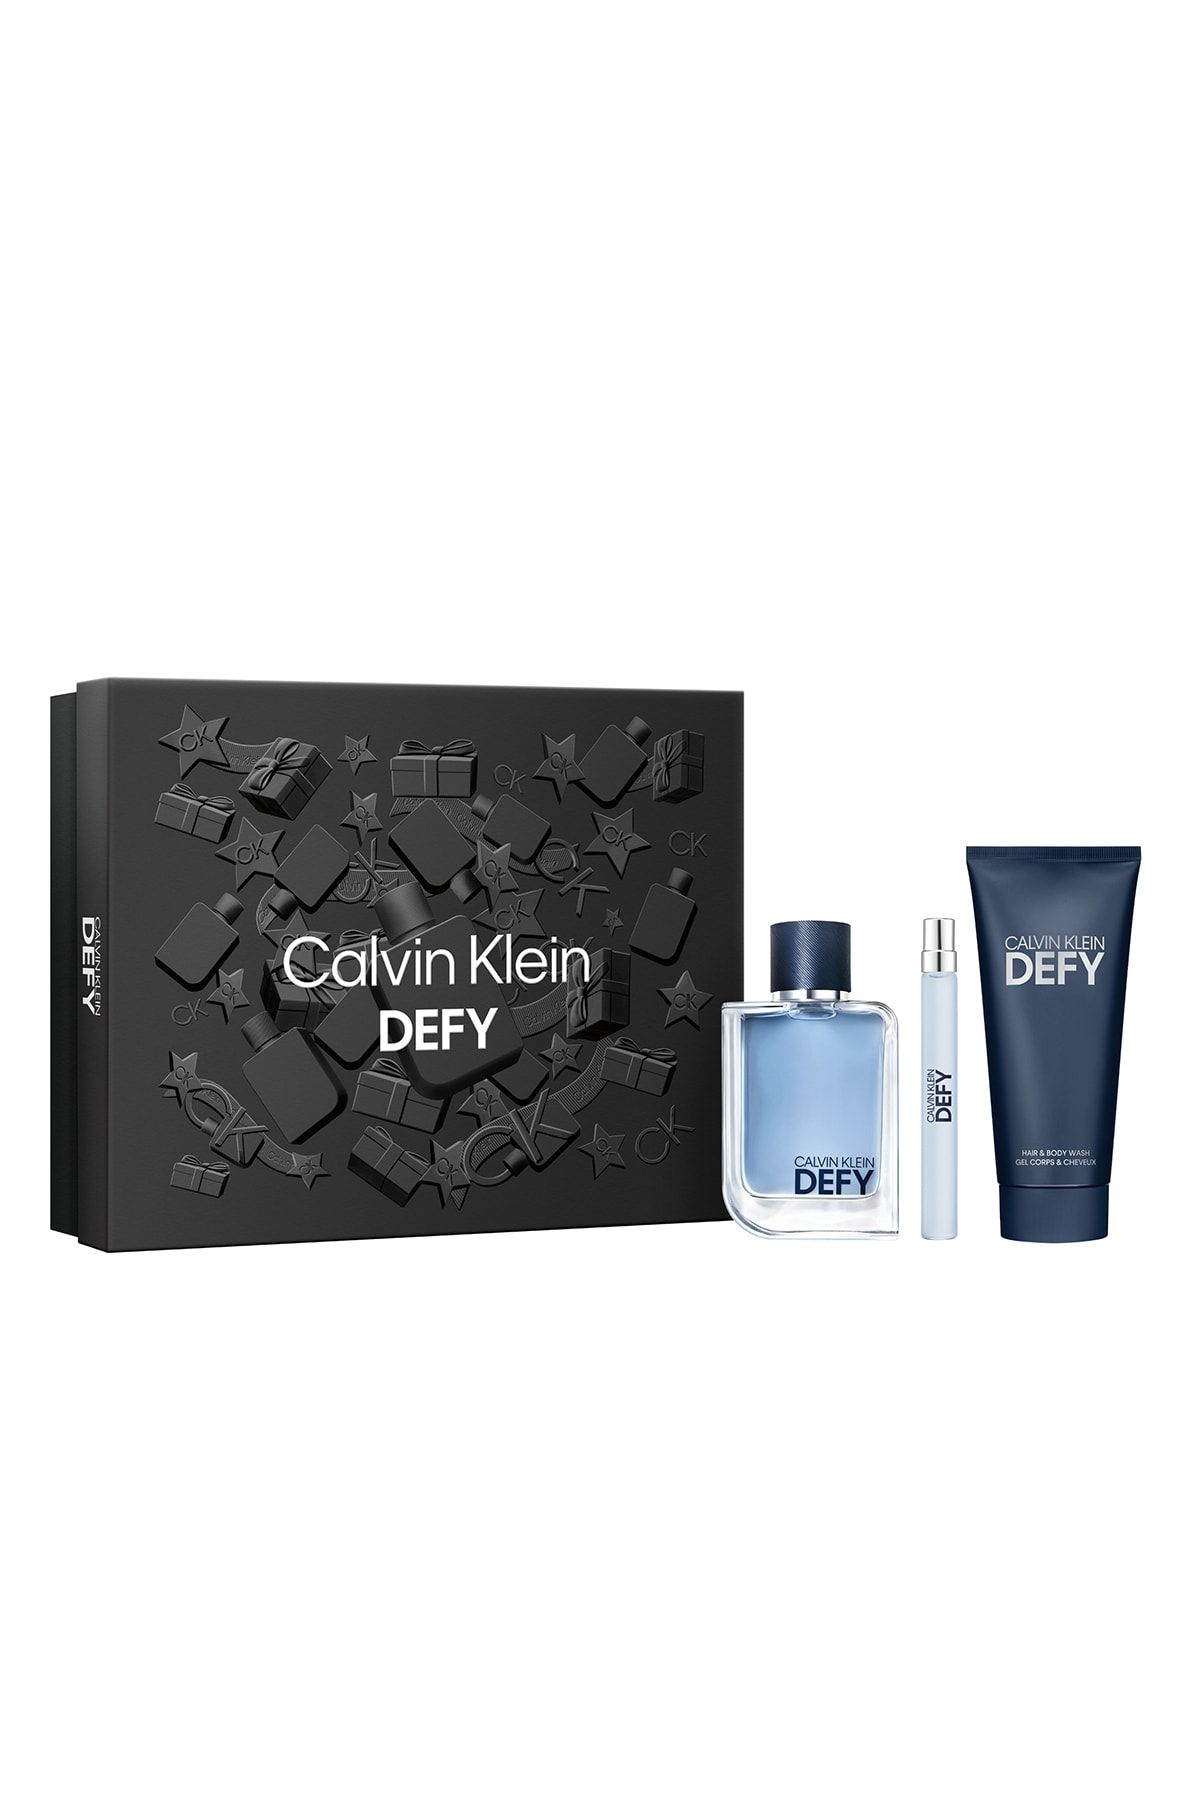 Calvin Klein Defy Edt 100ml + Shower Gel 100ml + Edt 10ml Set